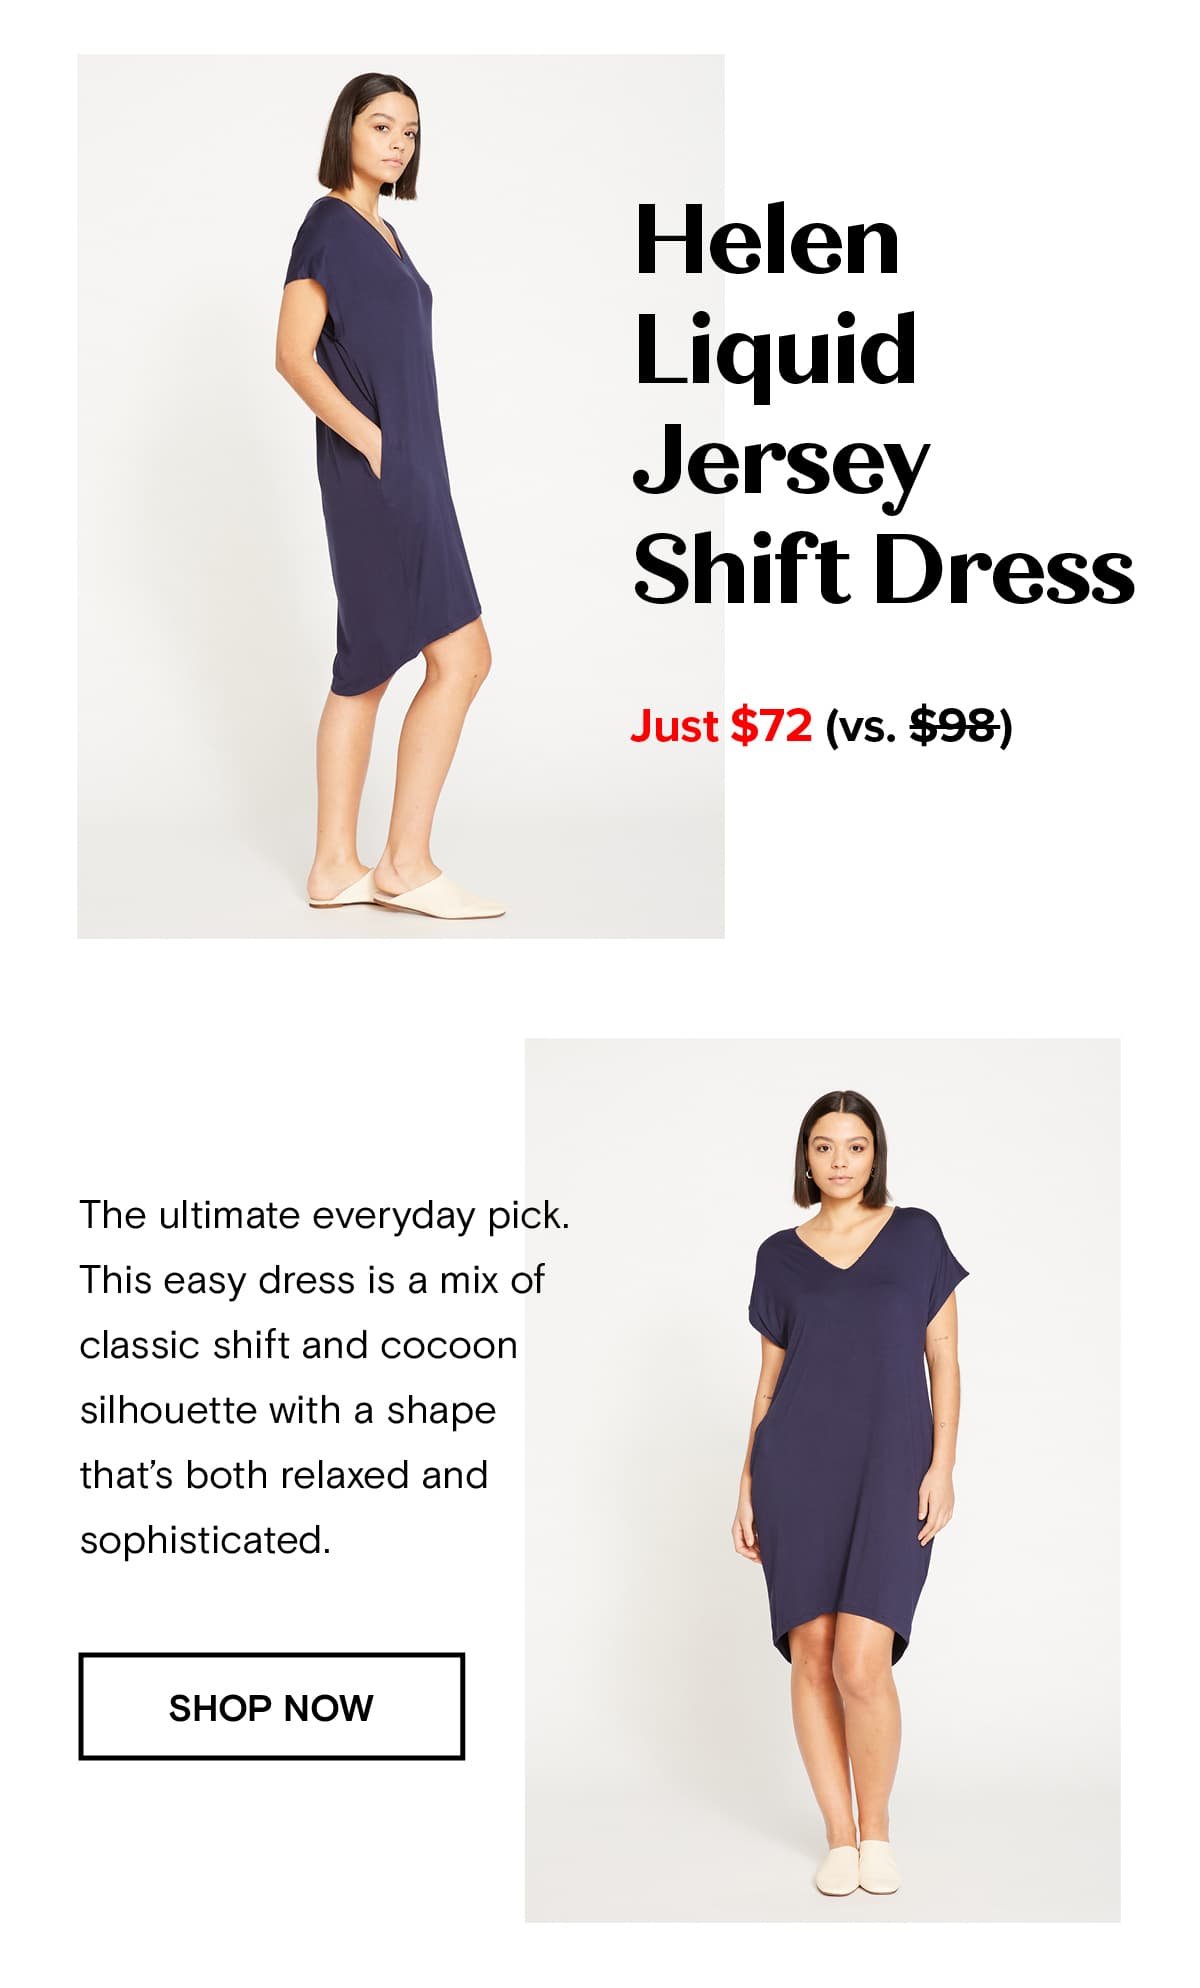 Helen Liquid Jersey Shift Dress Just $72 (vs. $98)